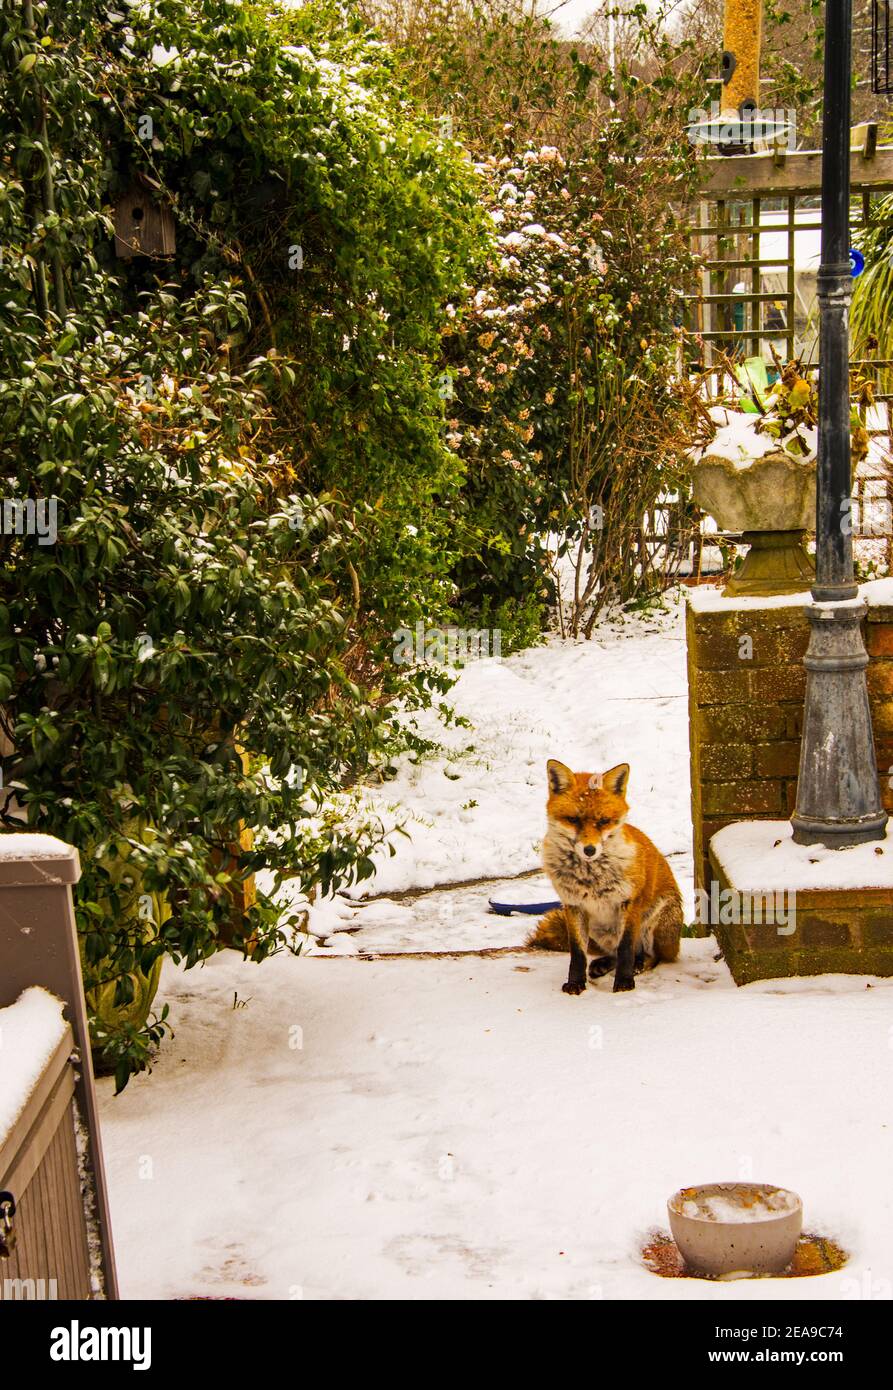 An urban fox in snow covered garden. Stock Photo